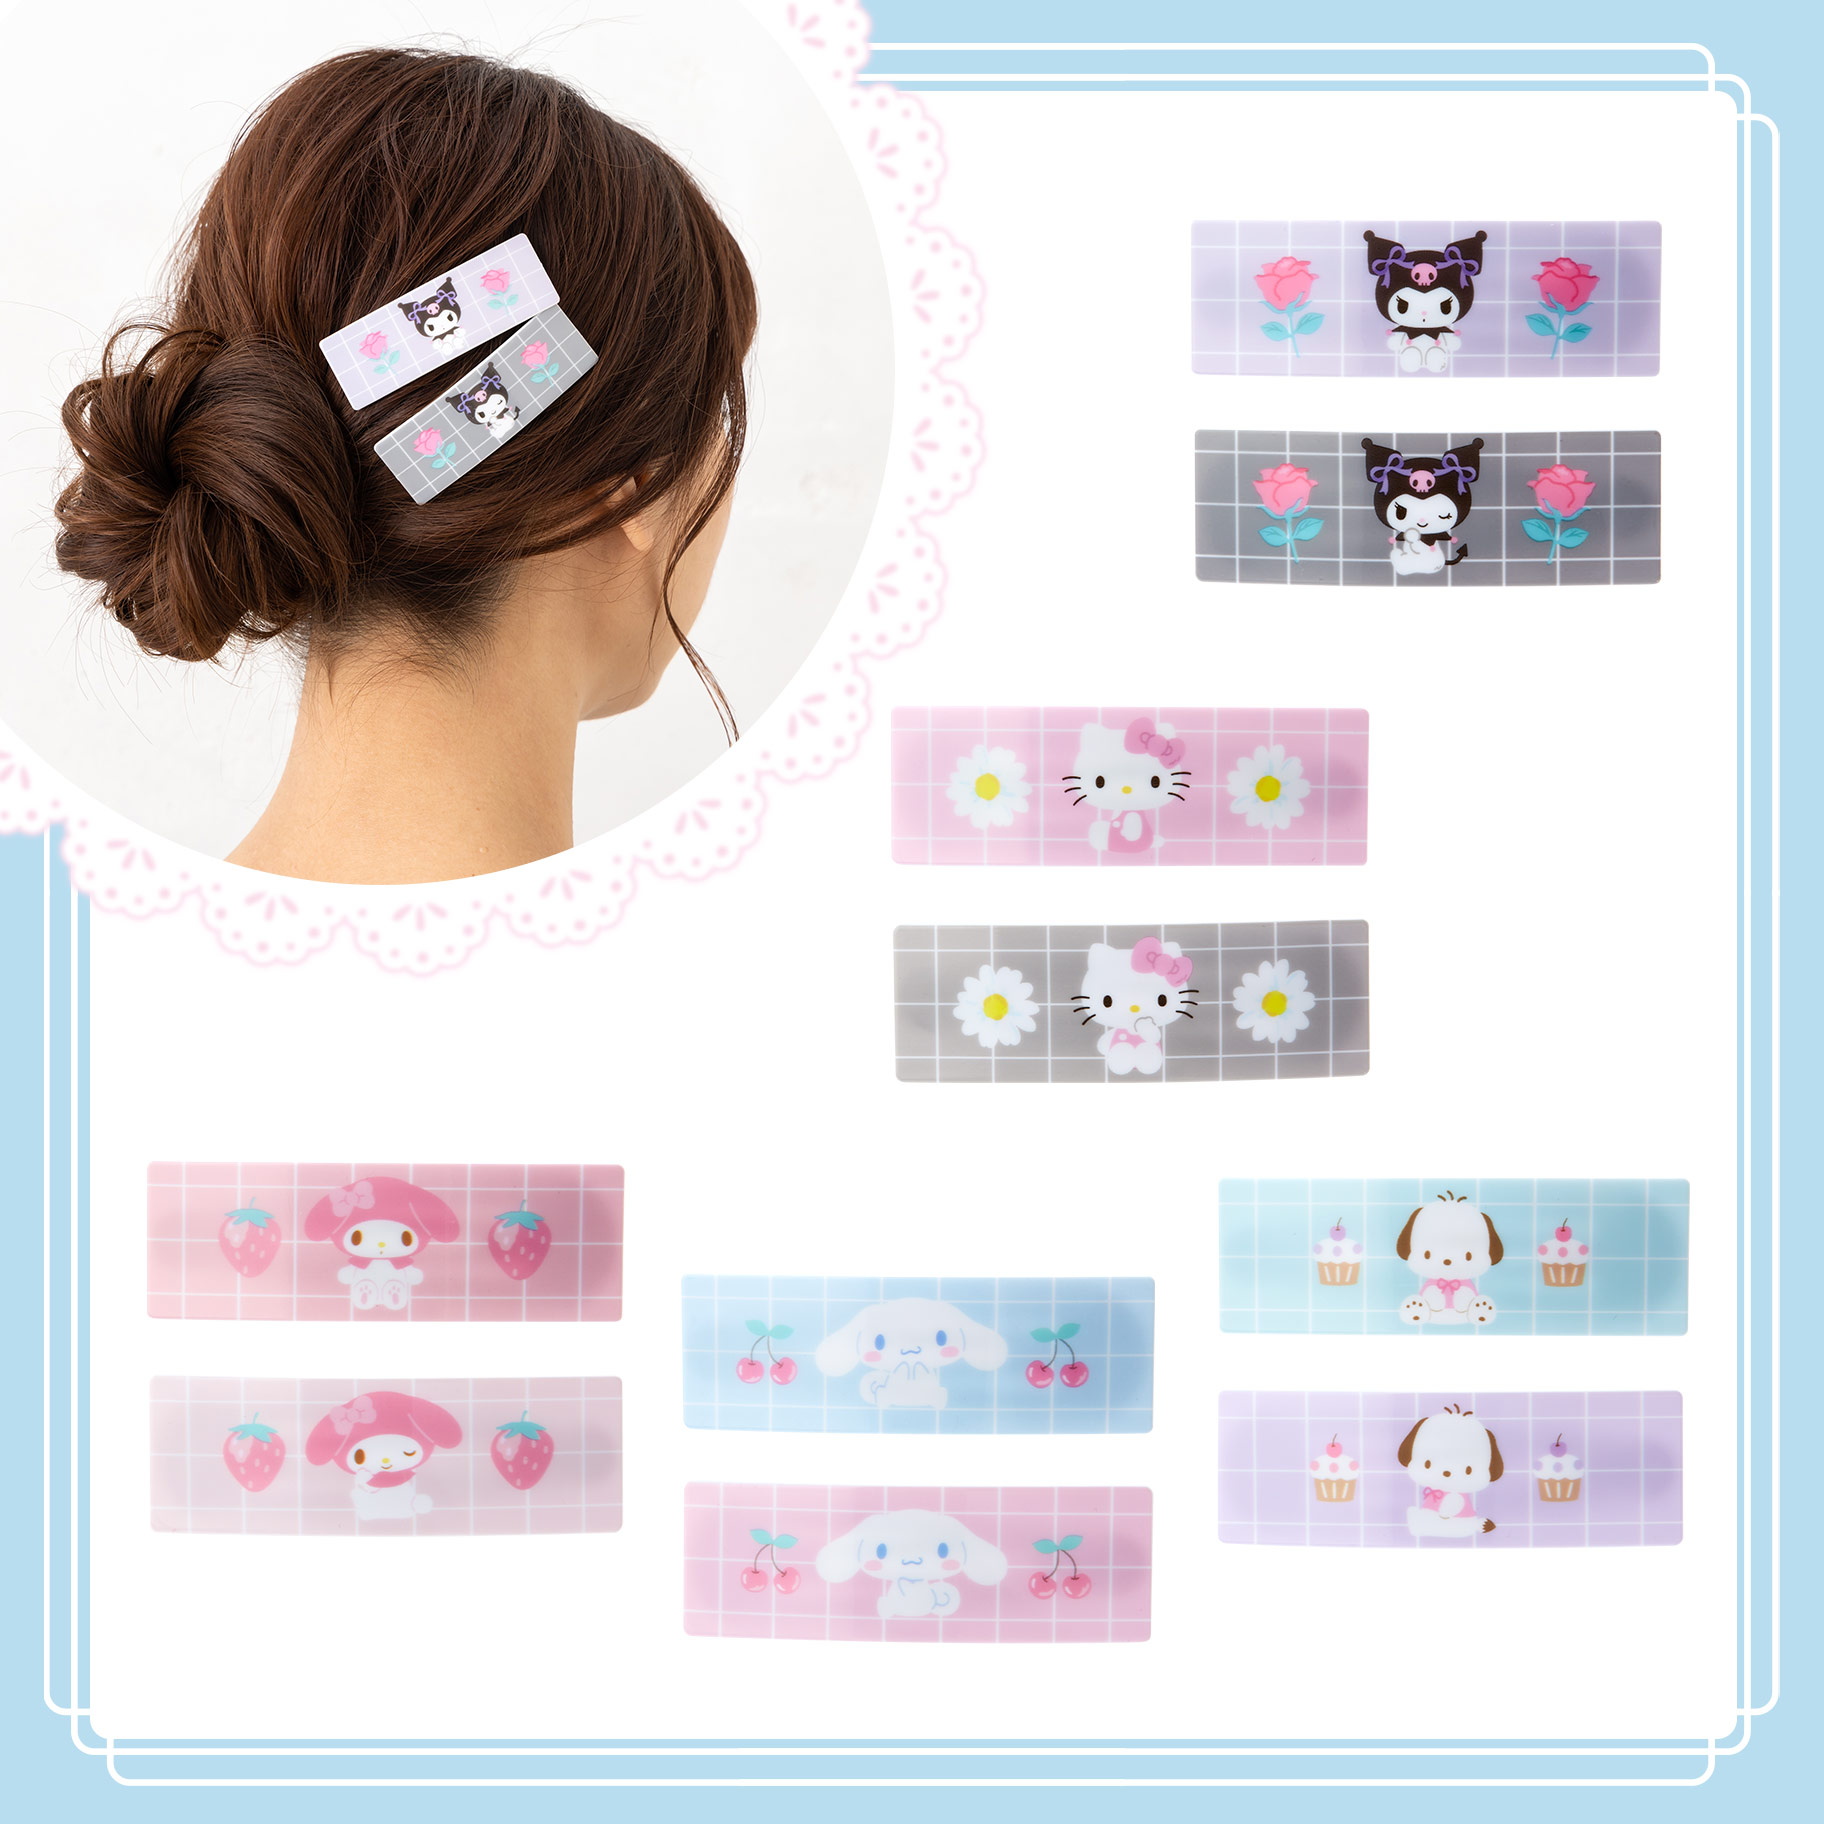 方形樹脂髮夾組 2入-三麗鷗 Sanrio 日本進口正版授權